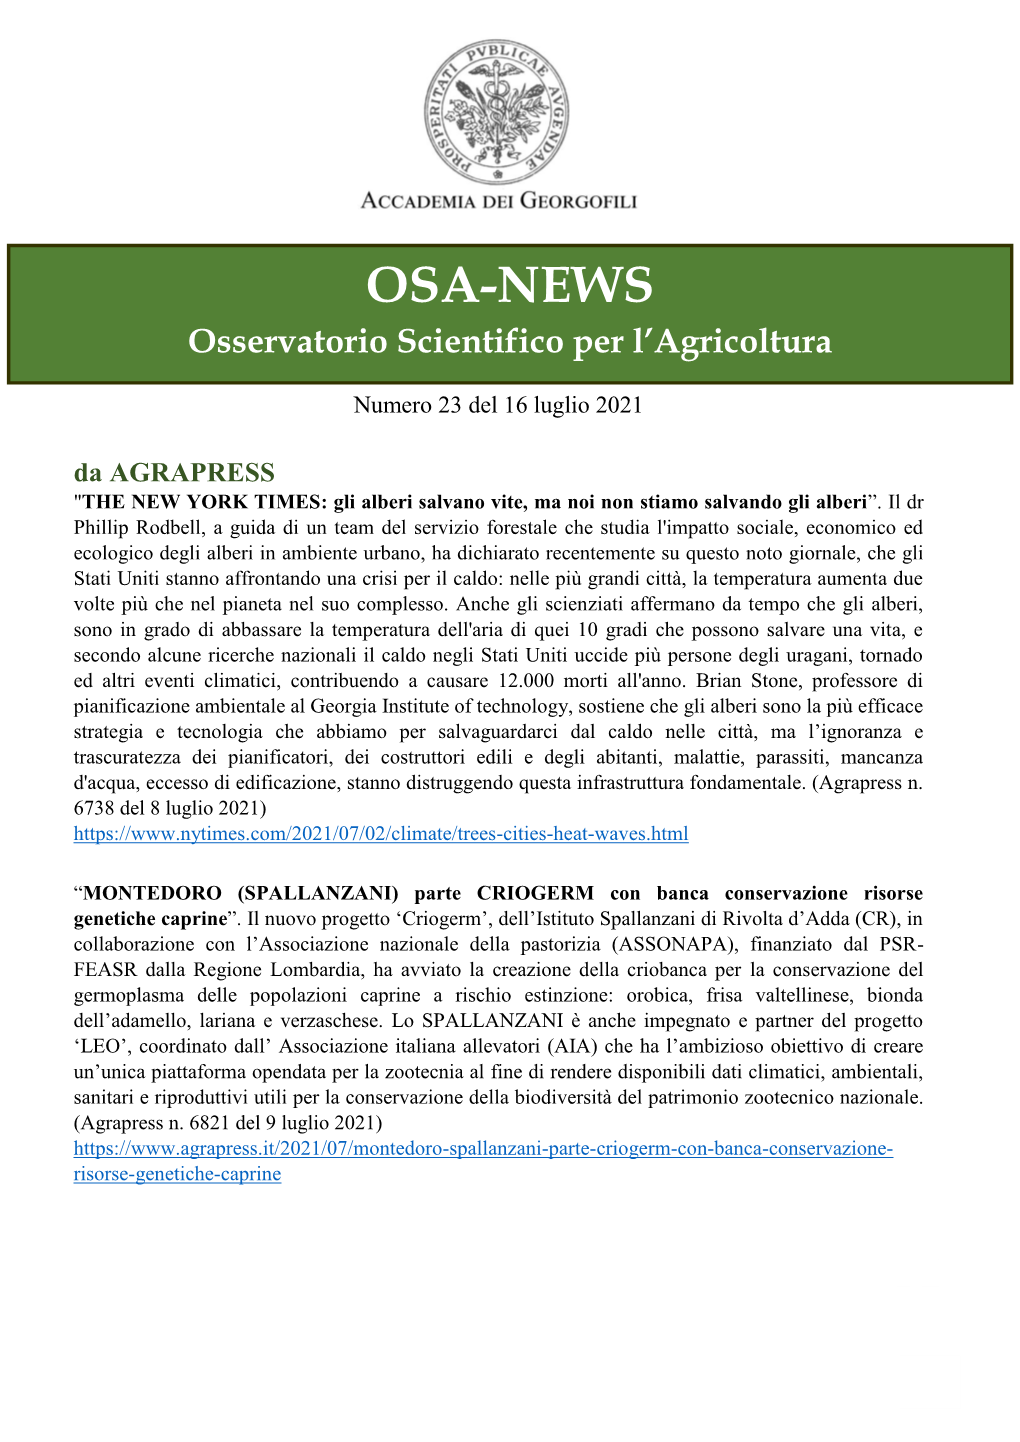 OSA-NEWS Osservatorio Scientifico Per L’Agricoltura